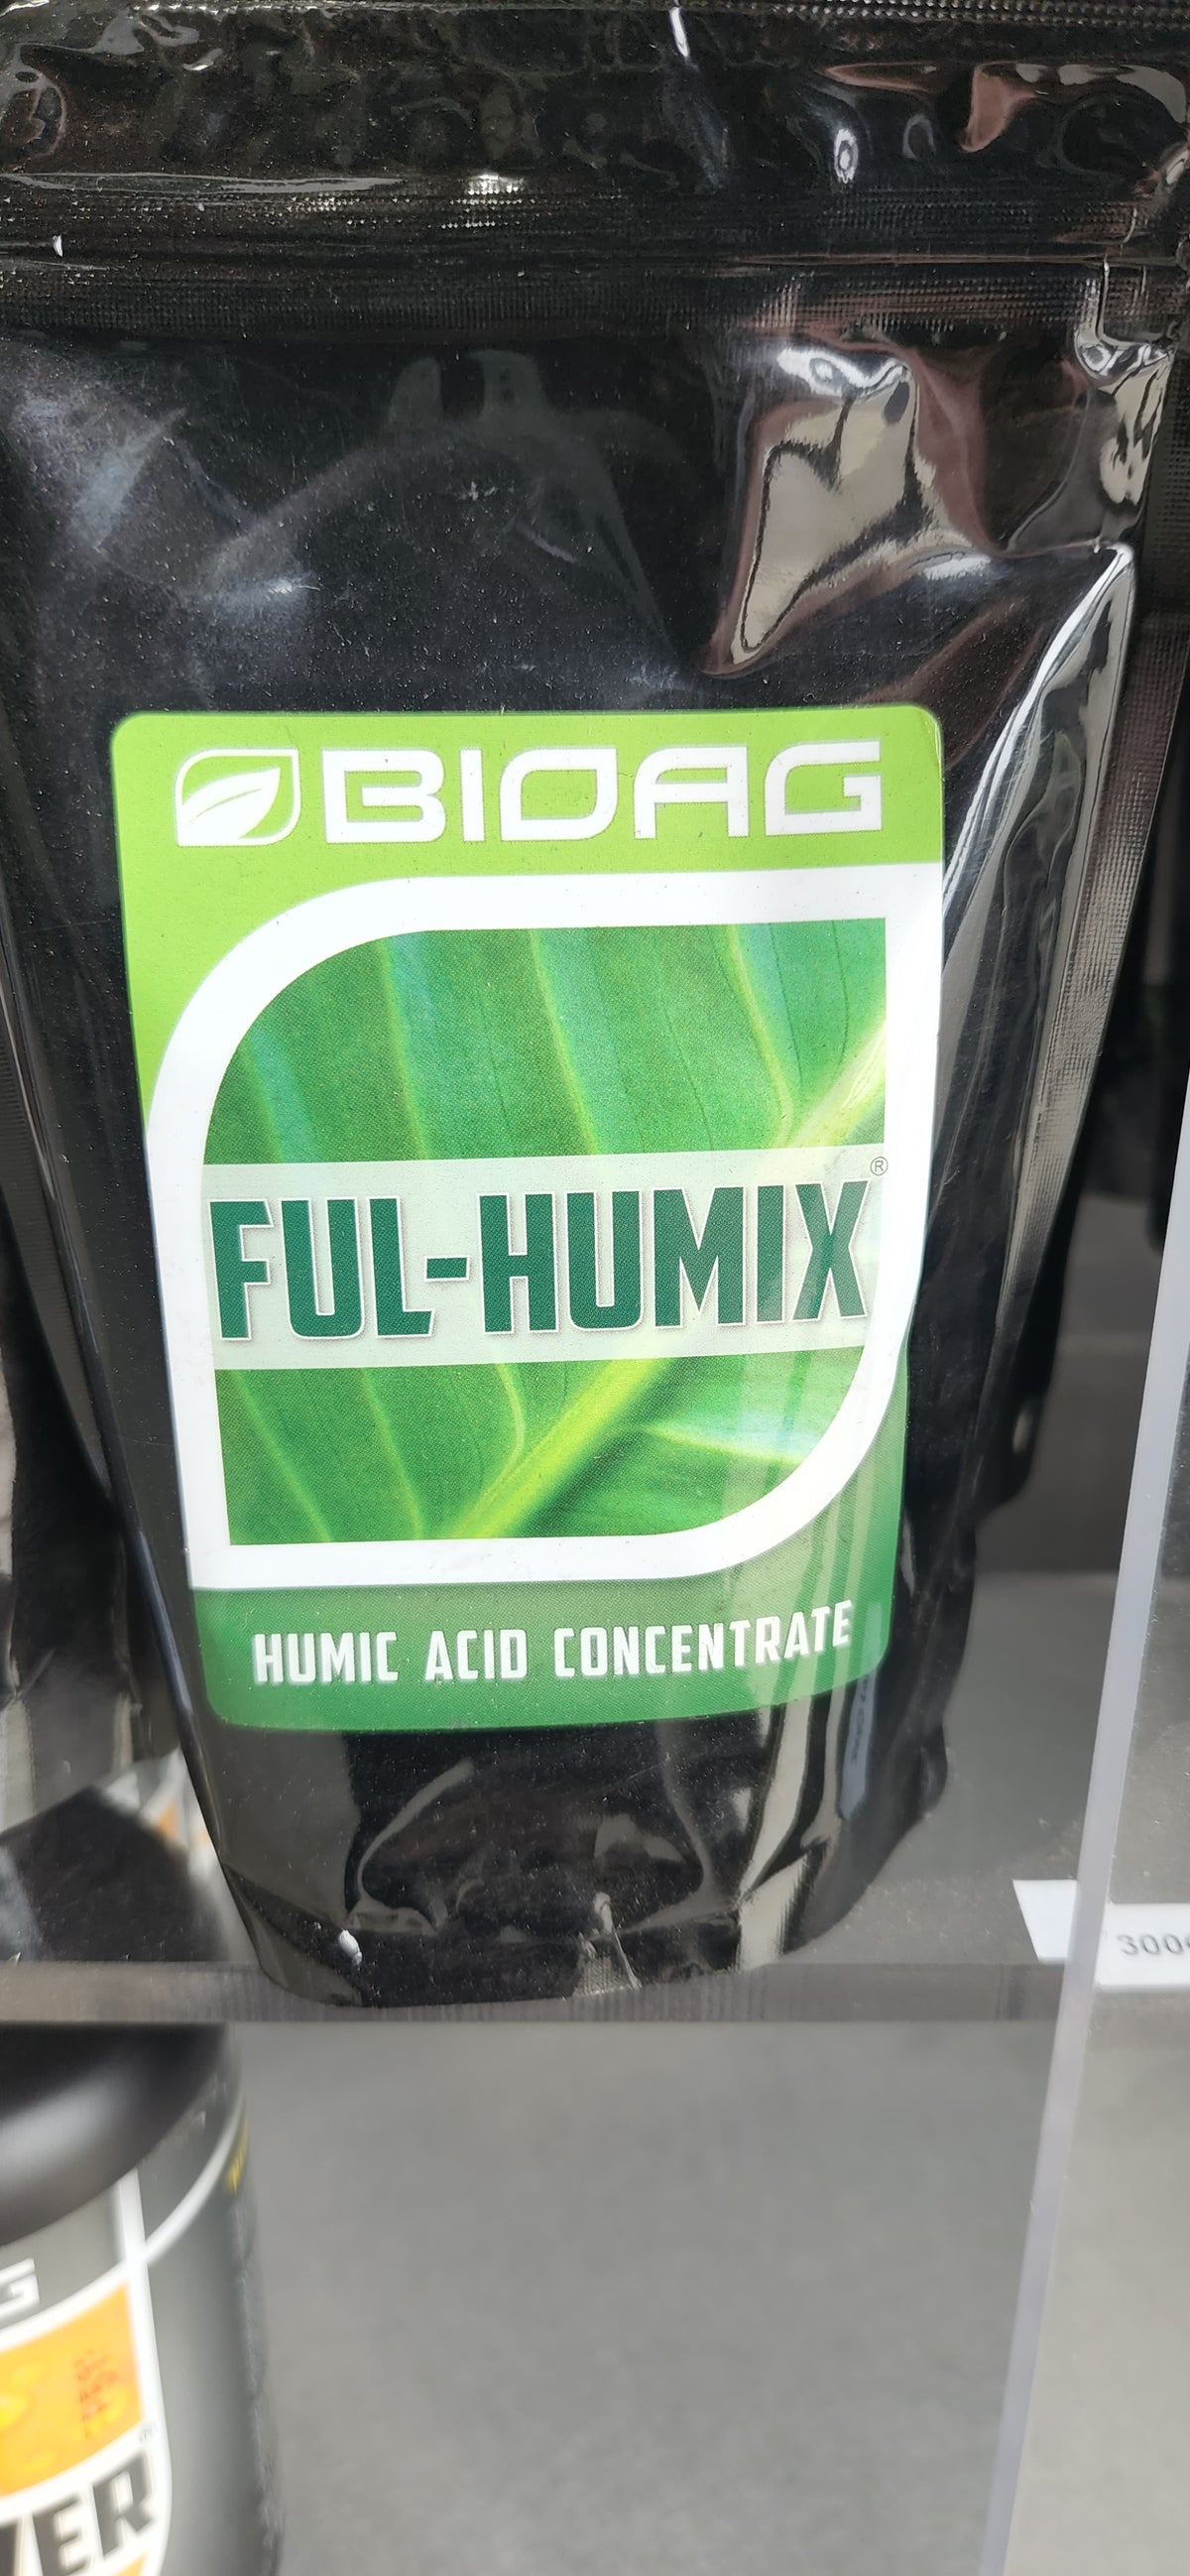 Bioag Ful-humix 300g